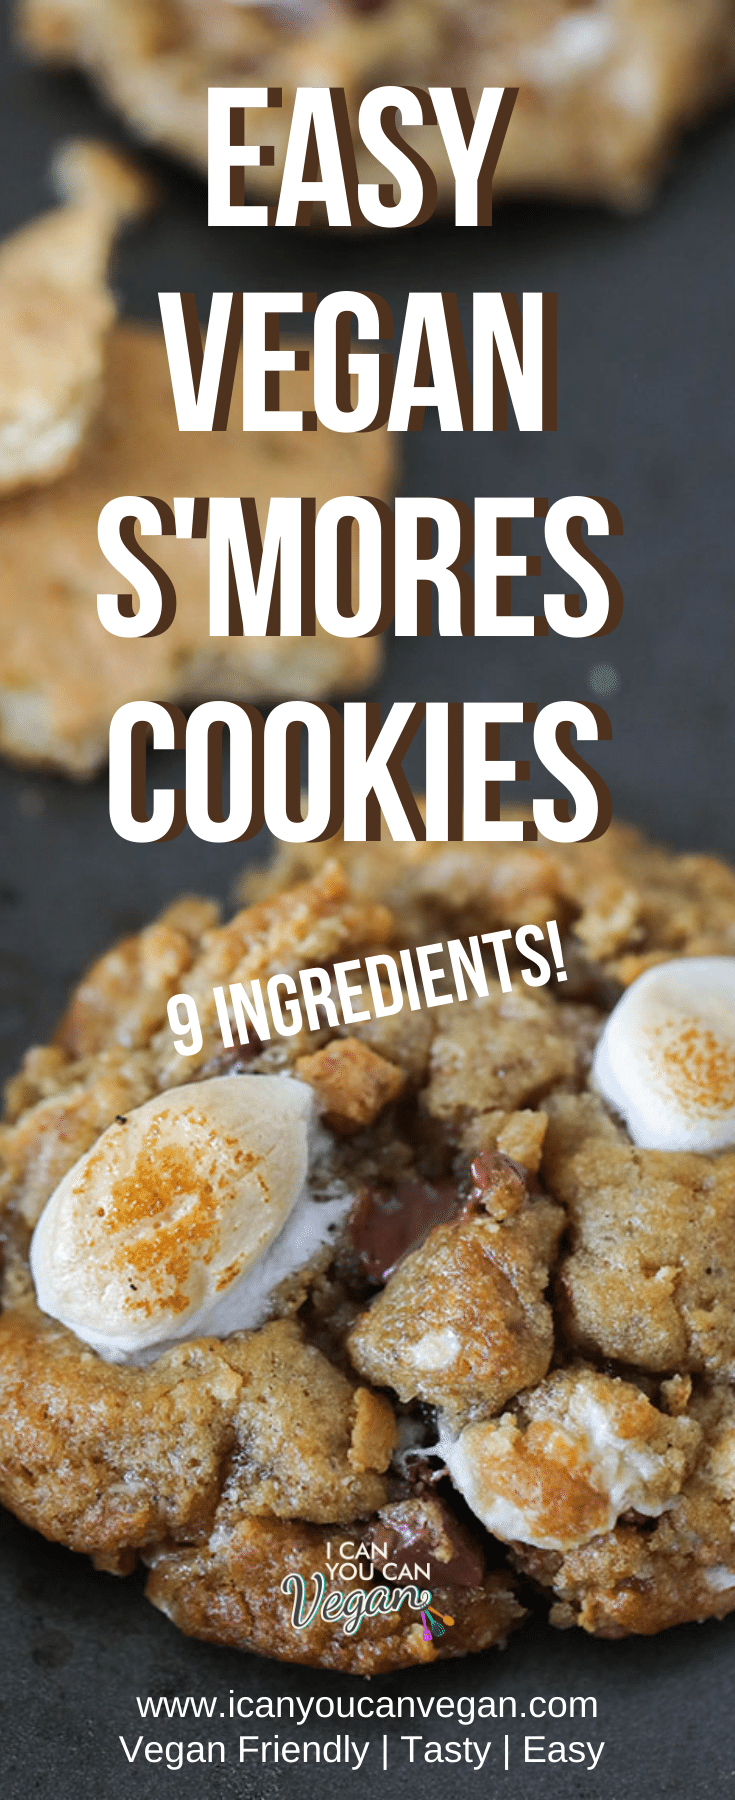 Vegan S'mores Cookies Pinterest